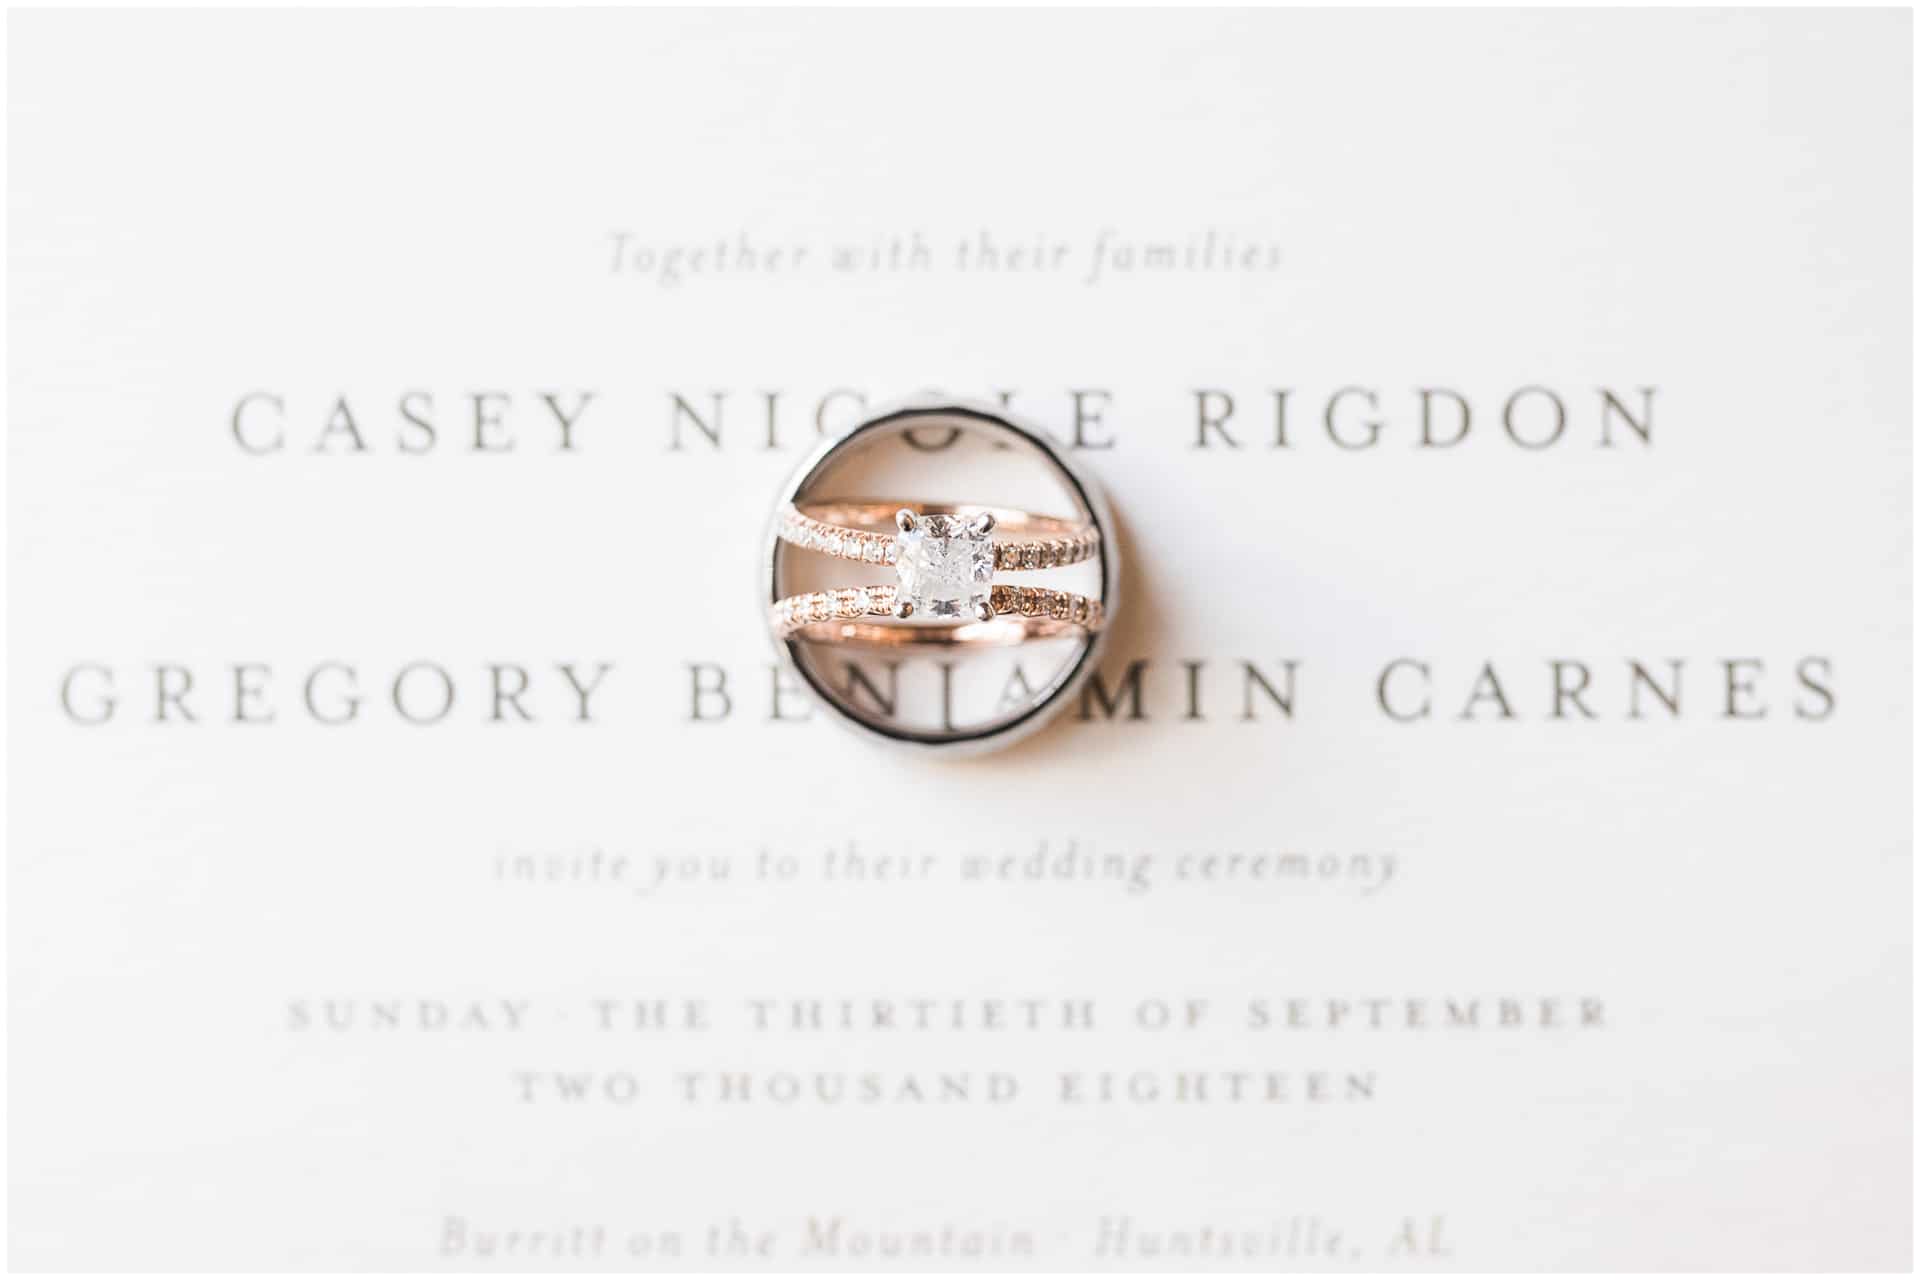 huntsville Alabama wedding - engagement ring and wedding bands on wedding invitation